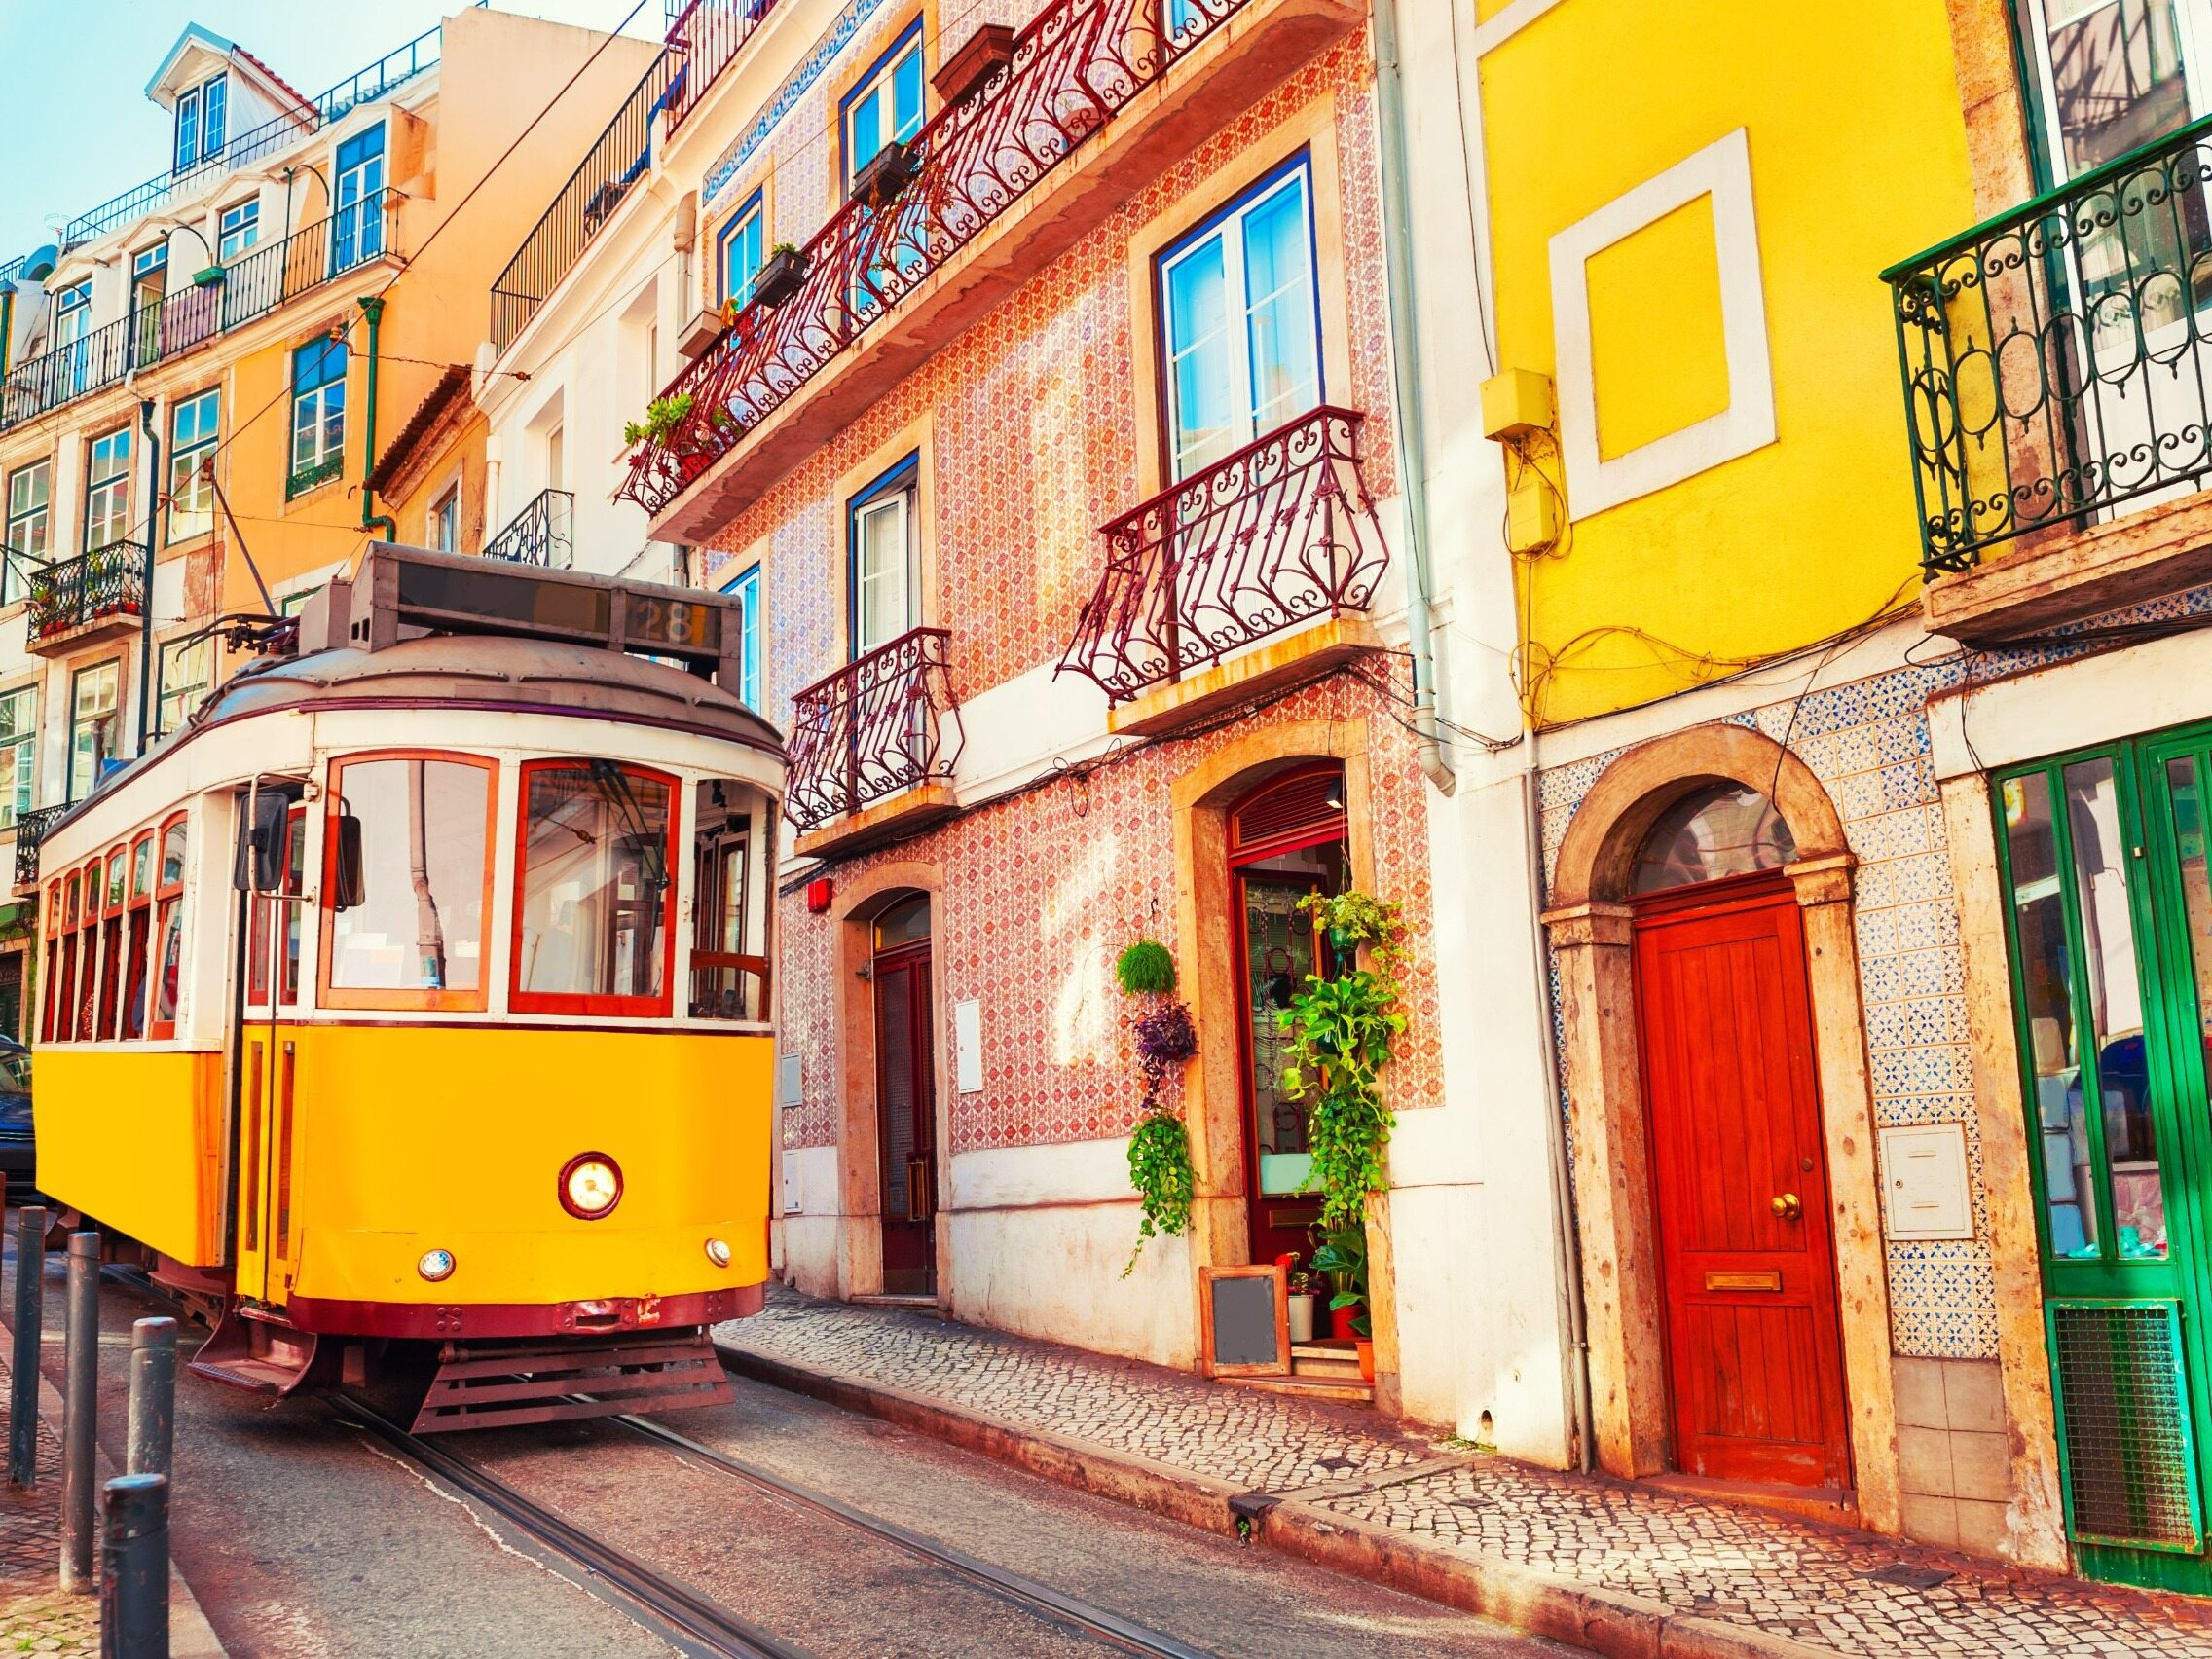 Ten żółty tramwaj to jeden z symboli europejskiej stolic. Której?